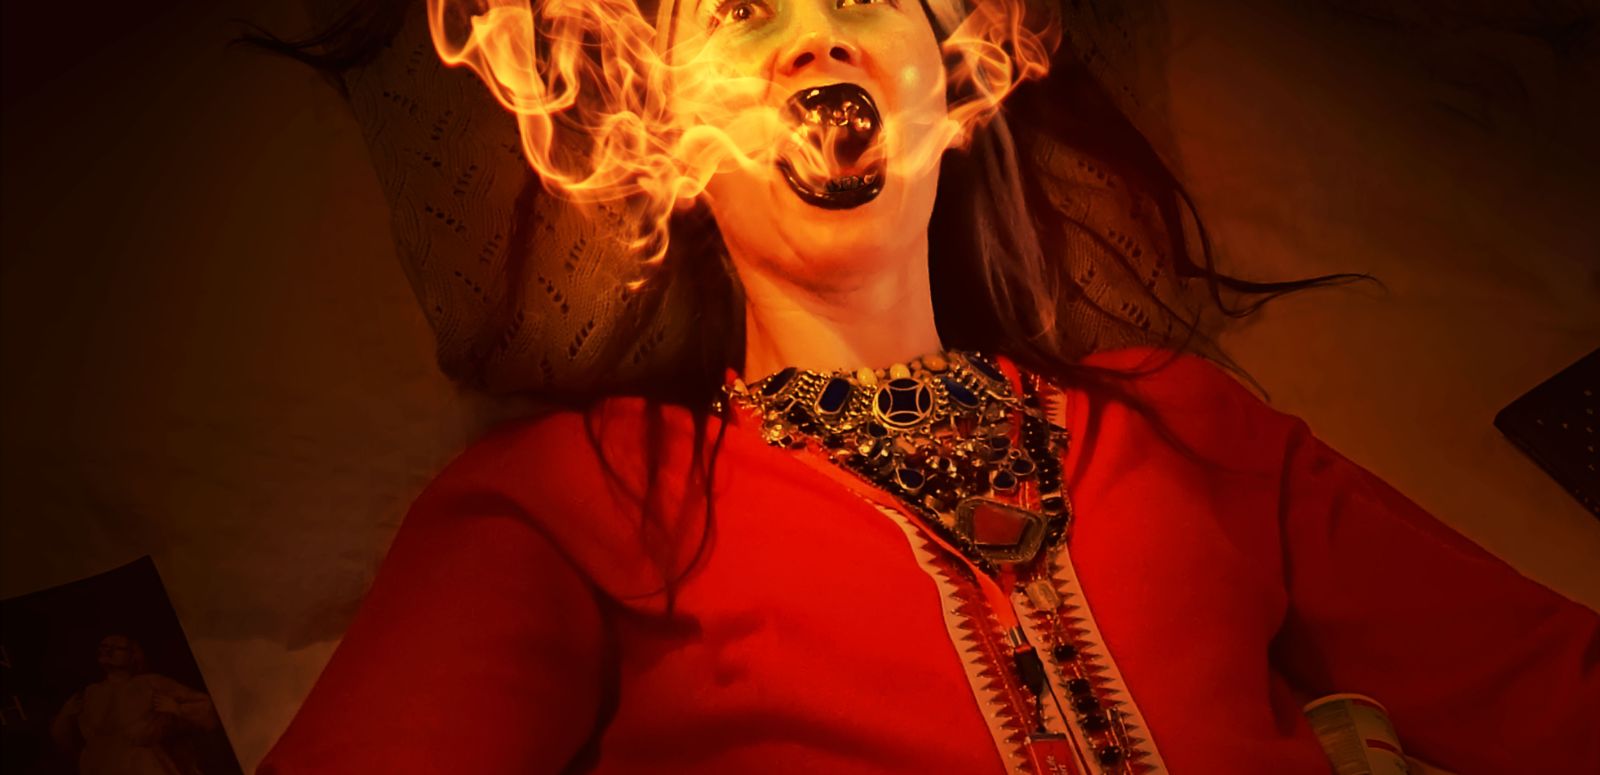 Porträt von Johanna Hedva liegend umgeben von Medikamenten und einem offenen Mund aus dem Feuerflammen kommen